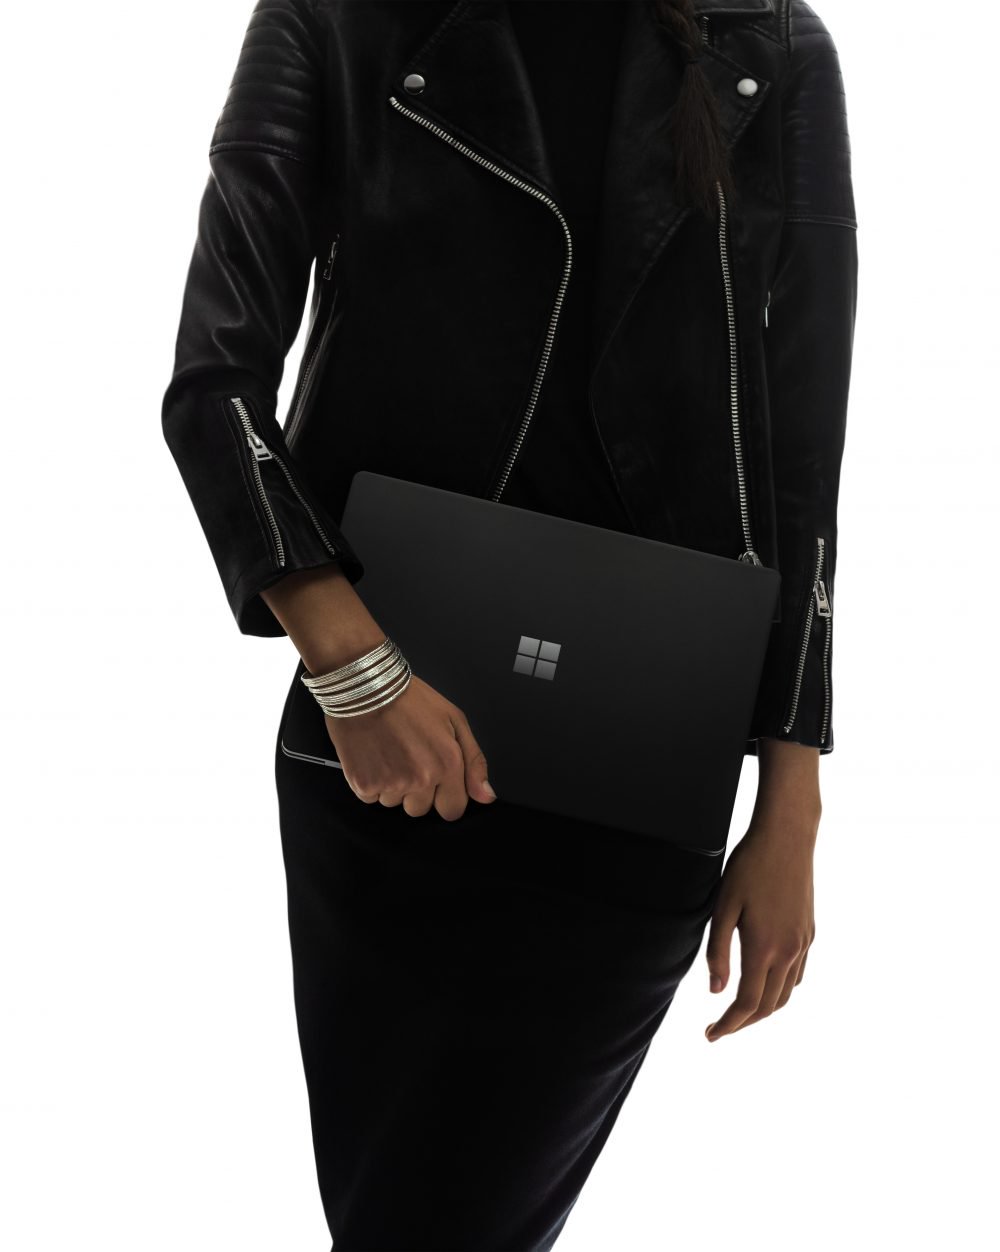 Rozpieść siebie! Microsoft Surface Laptop 2 teraz w ogromnej cenie 300 USD